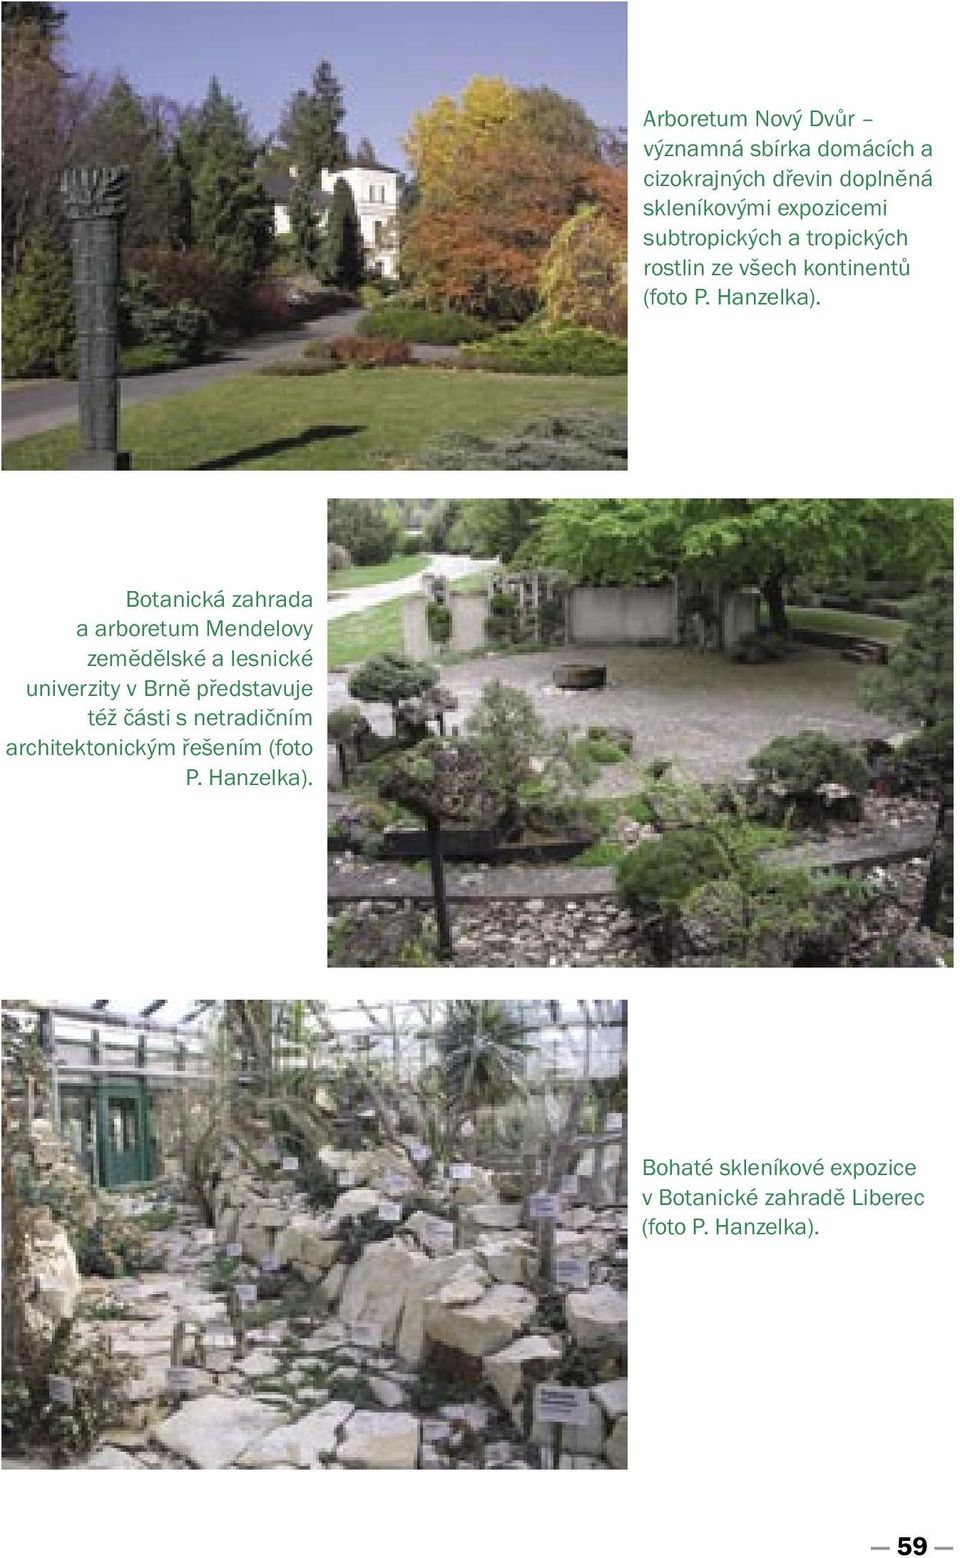 Botanická zahrada a arboretum Mendelovy zemědělské a lesnické univerzity v Brně představuje též části s